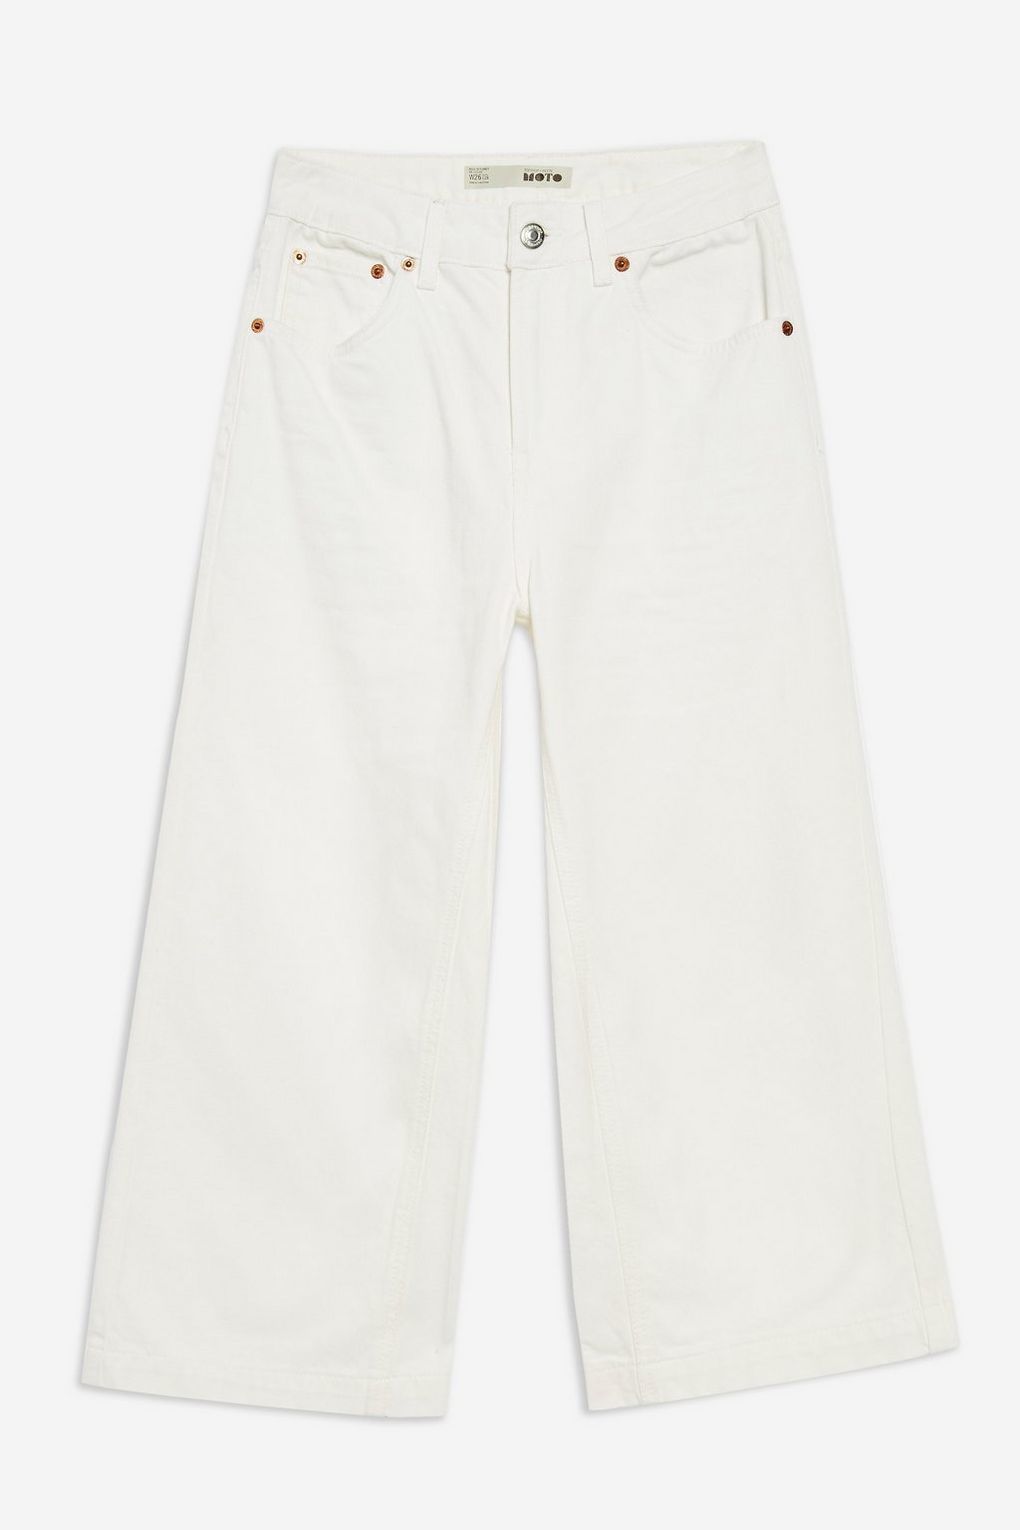 Jeans anchos en denim blanco no elástico, de Topshop (20 euros).